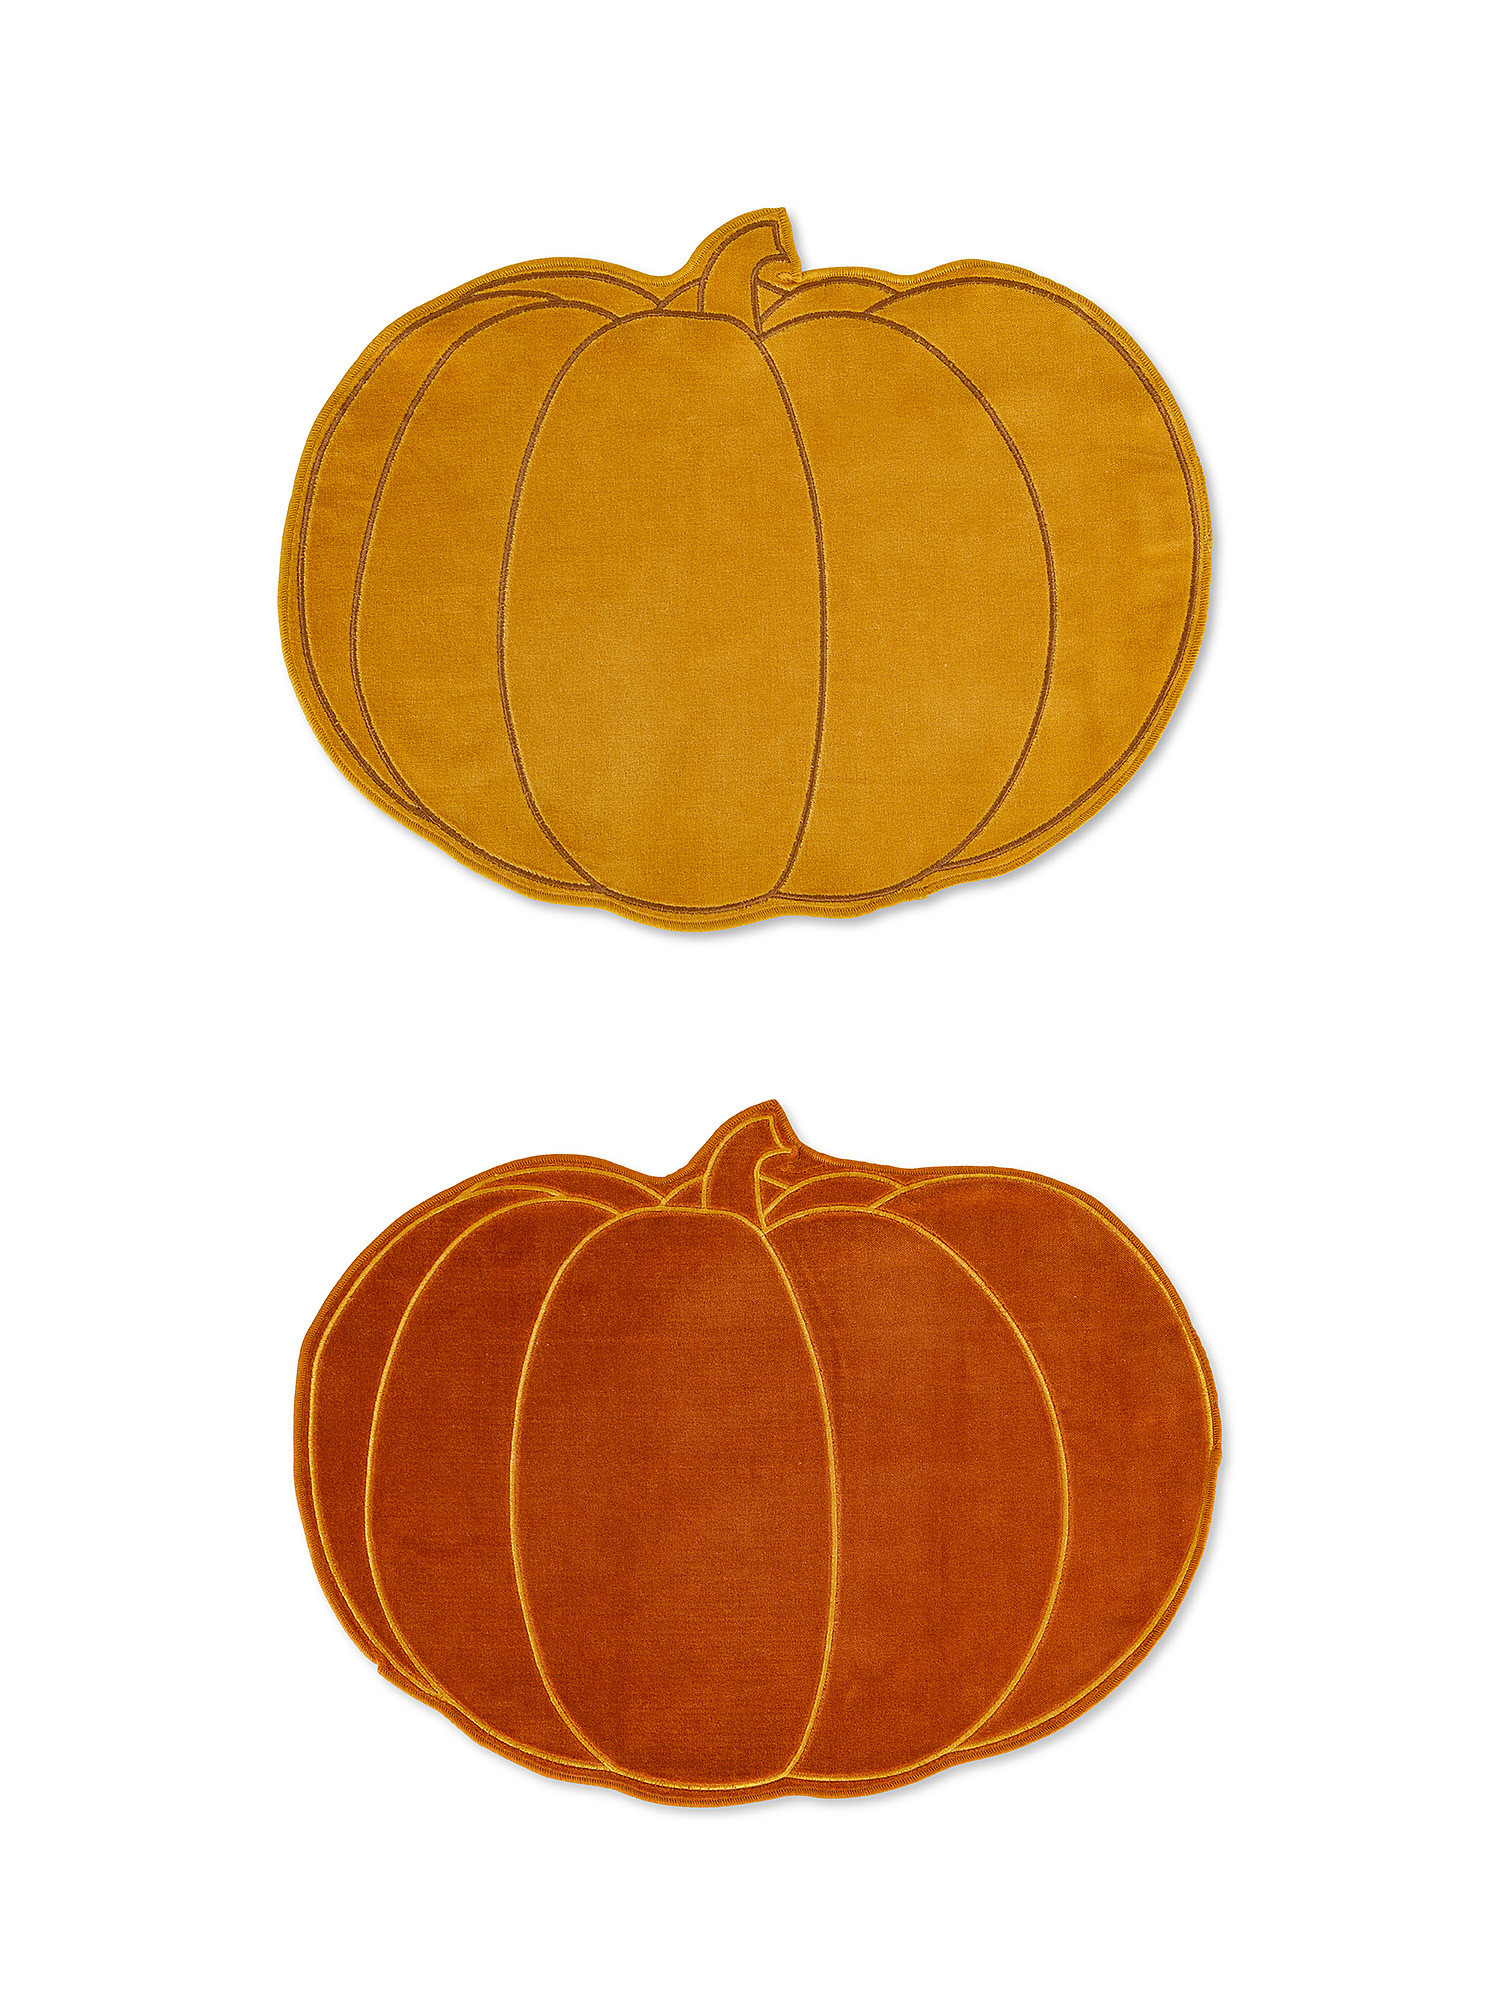 Cotton velvet pumpkin placemats, Multicolor, large image number 0